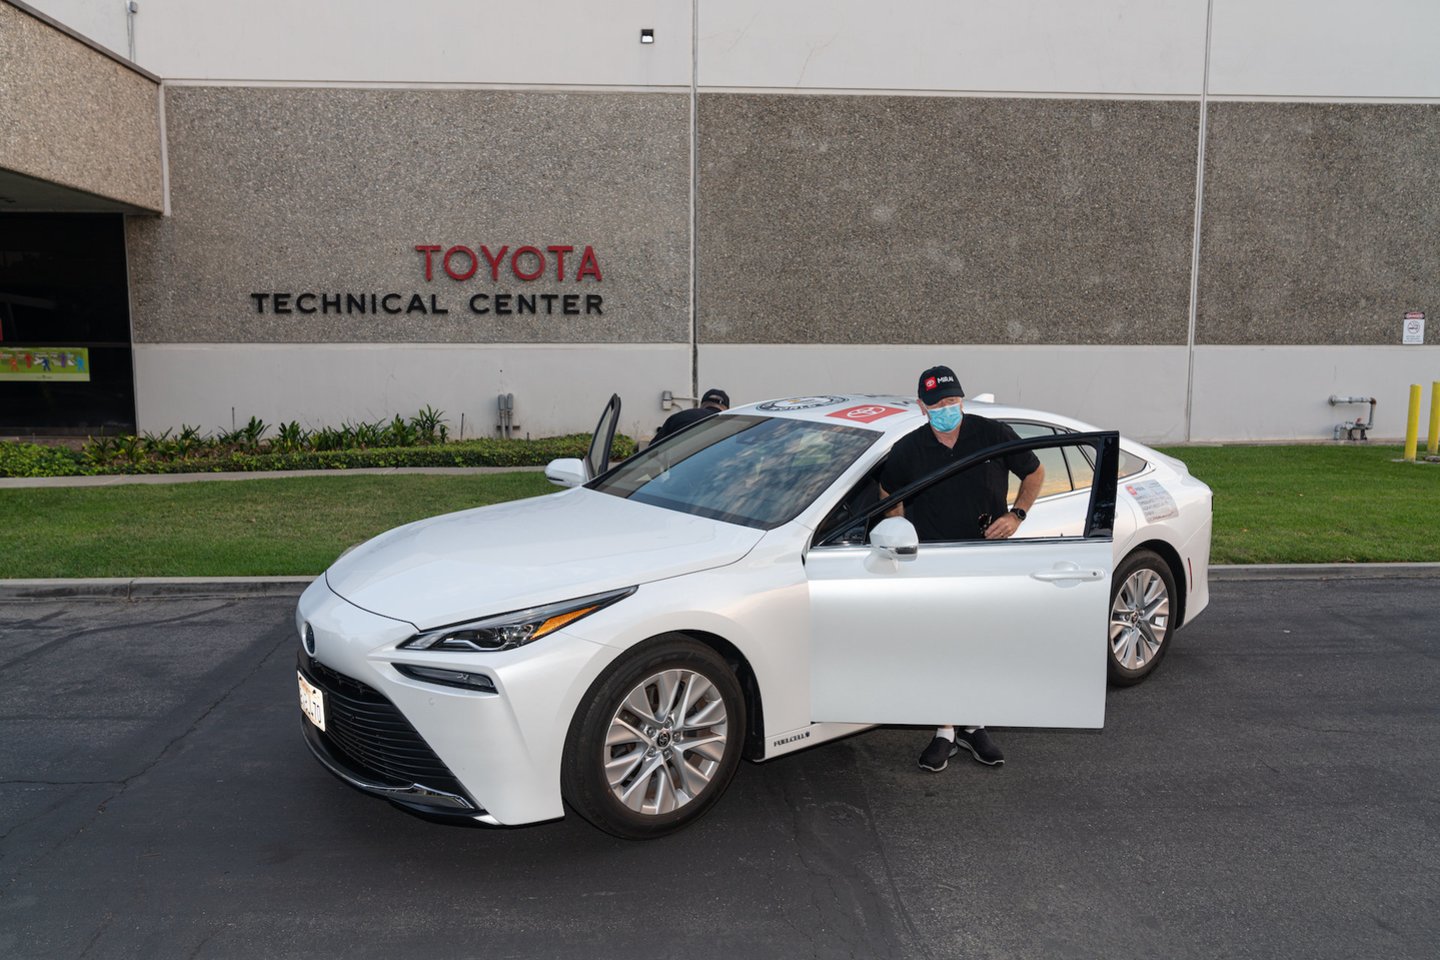 Naujasis „Toyota Mirai“ pasiekimas įrašytas Guinnesso rekordų knygoje: šiuo modeliu buvo įveikta ilgiausia distancija vandenilio kuro celių elektromobiliu, nepapildžius bako.<br>Pranešėjų spaudai nuotr.